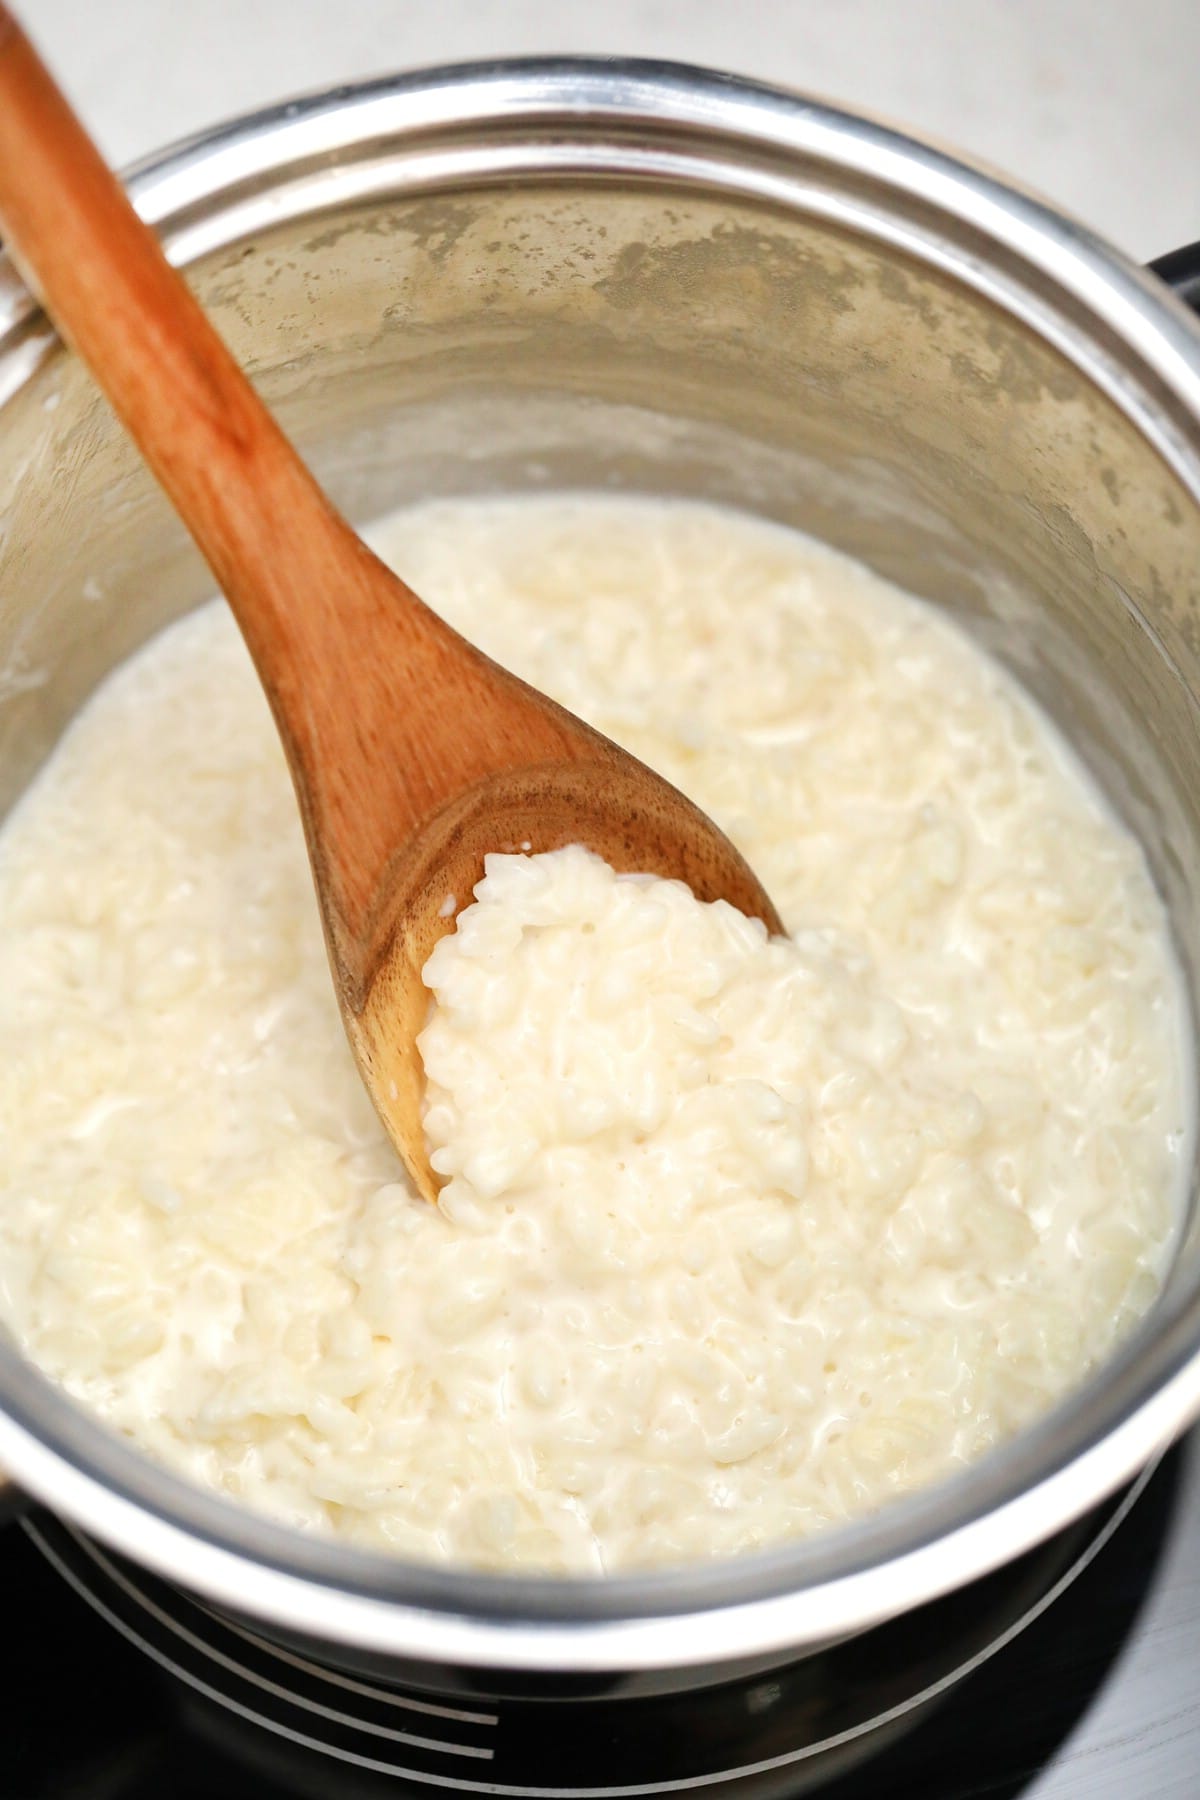 Thickened rice mixture